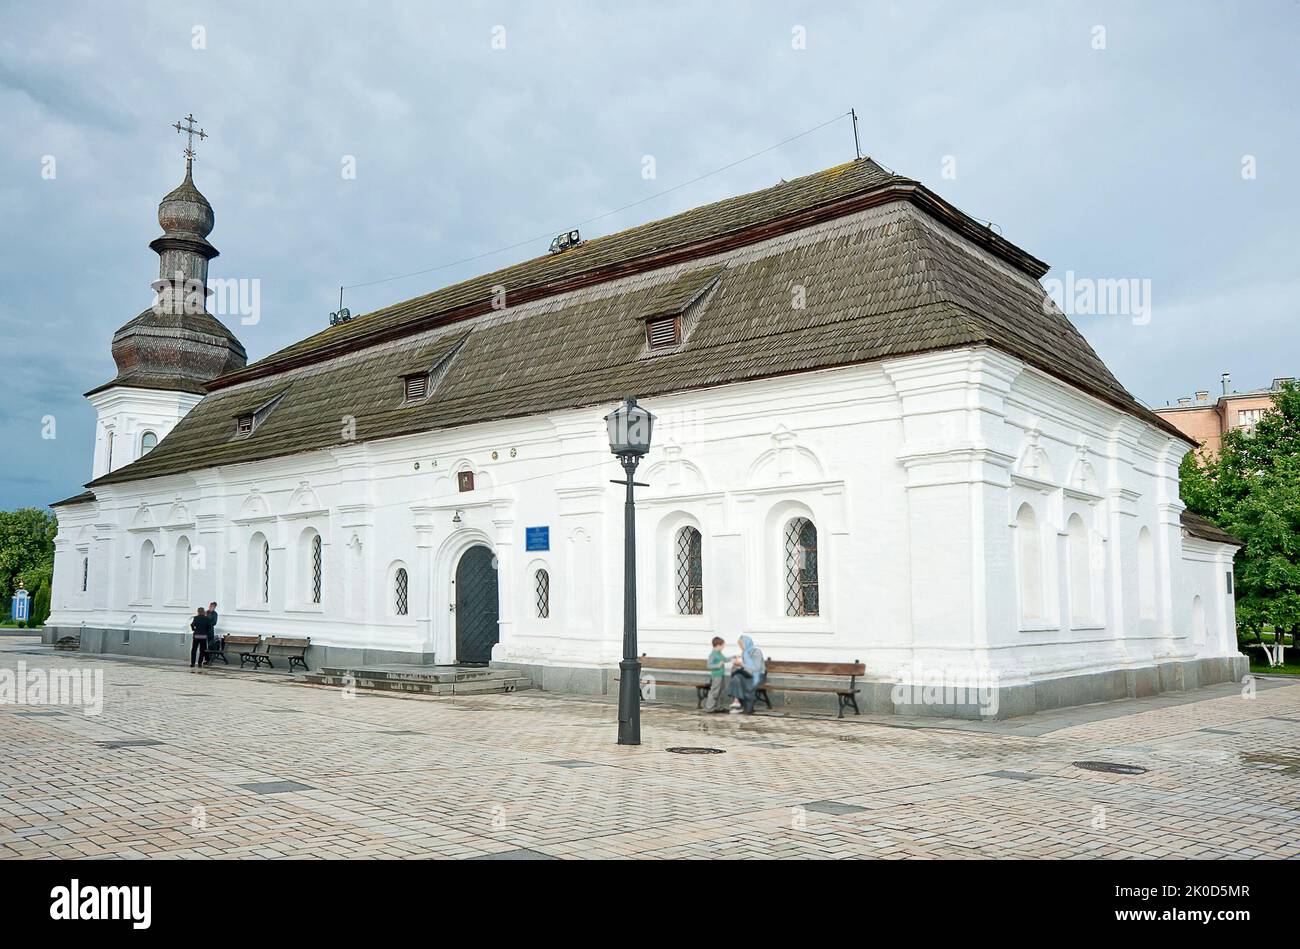 Chiesa refettoria di San Michele dorata cattedrale ortodossa del XVIII secolo a Kiev, Ucraina Foto Stock